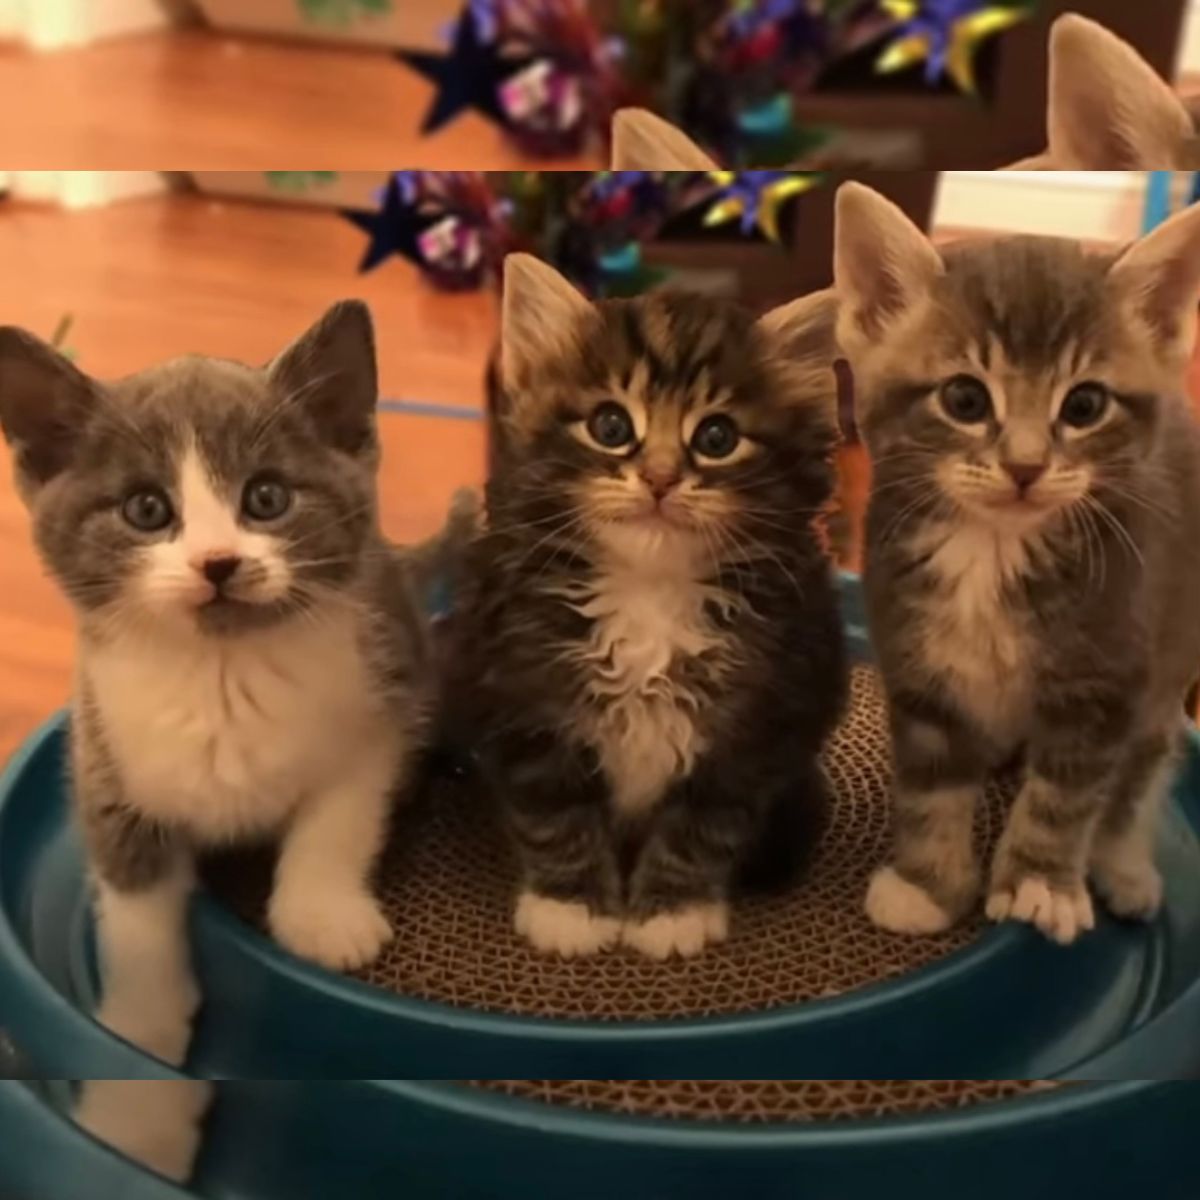 photo of three kittens sitting